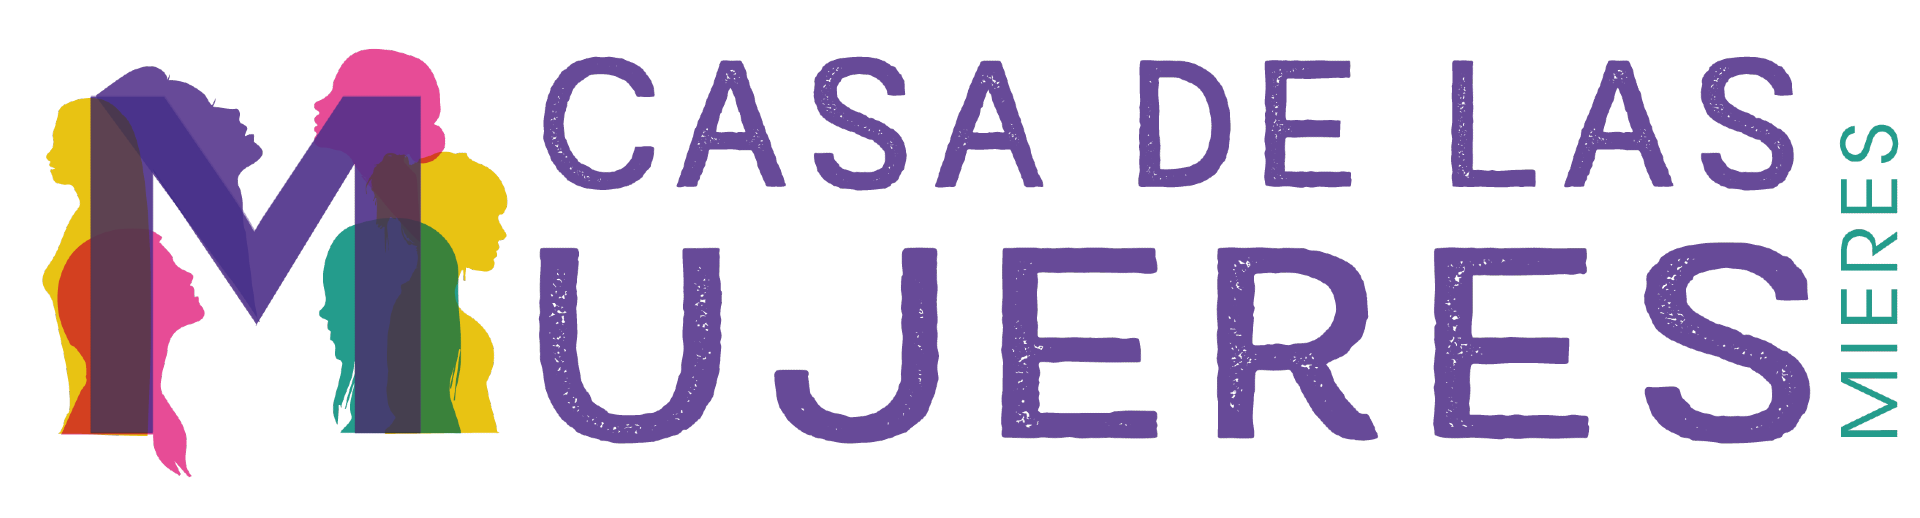 Banner Casa De Las Mujeres Mieres